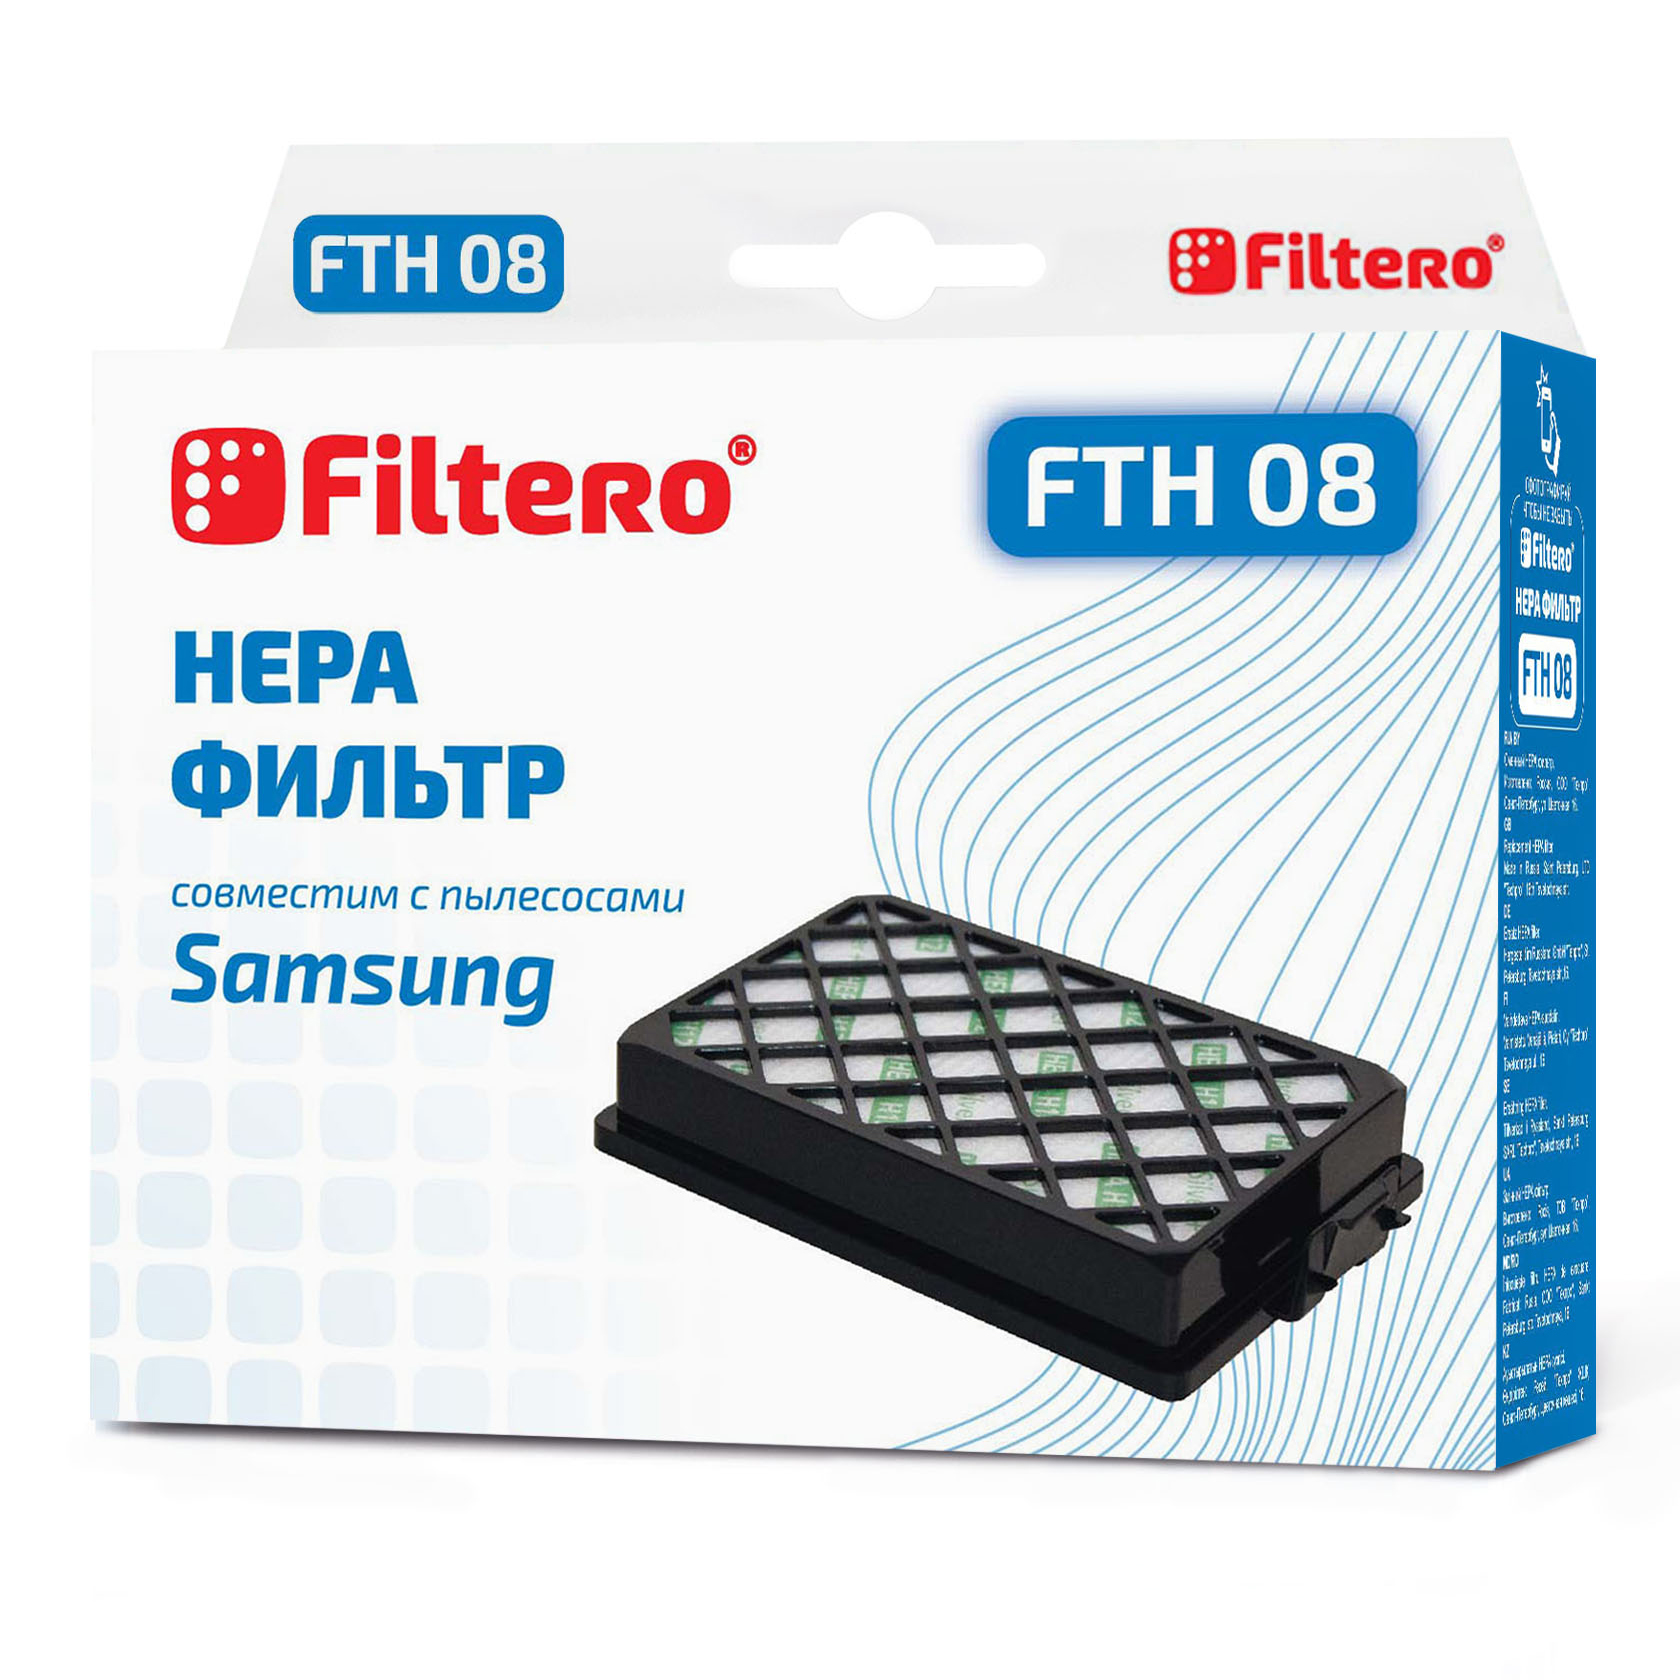 Фильтр HEPA Filtero FTH 08 SAM для пылесосов Samsung - фото 1